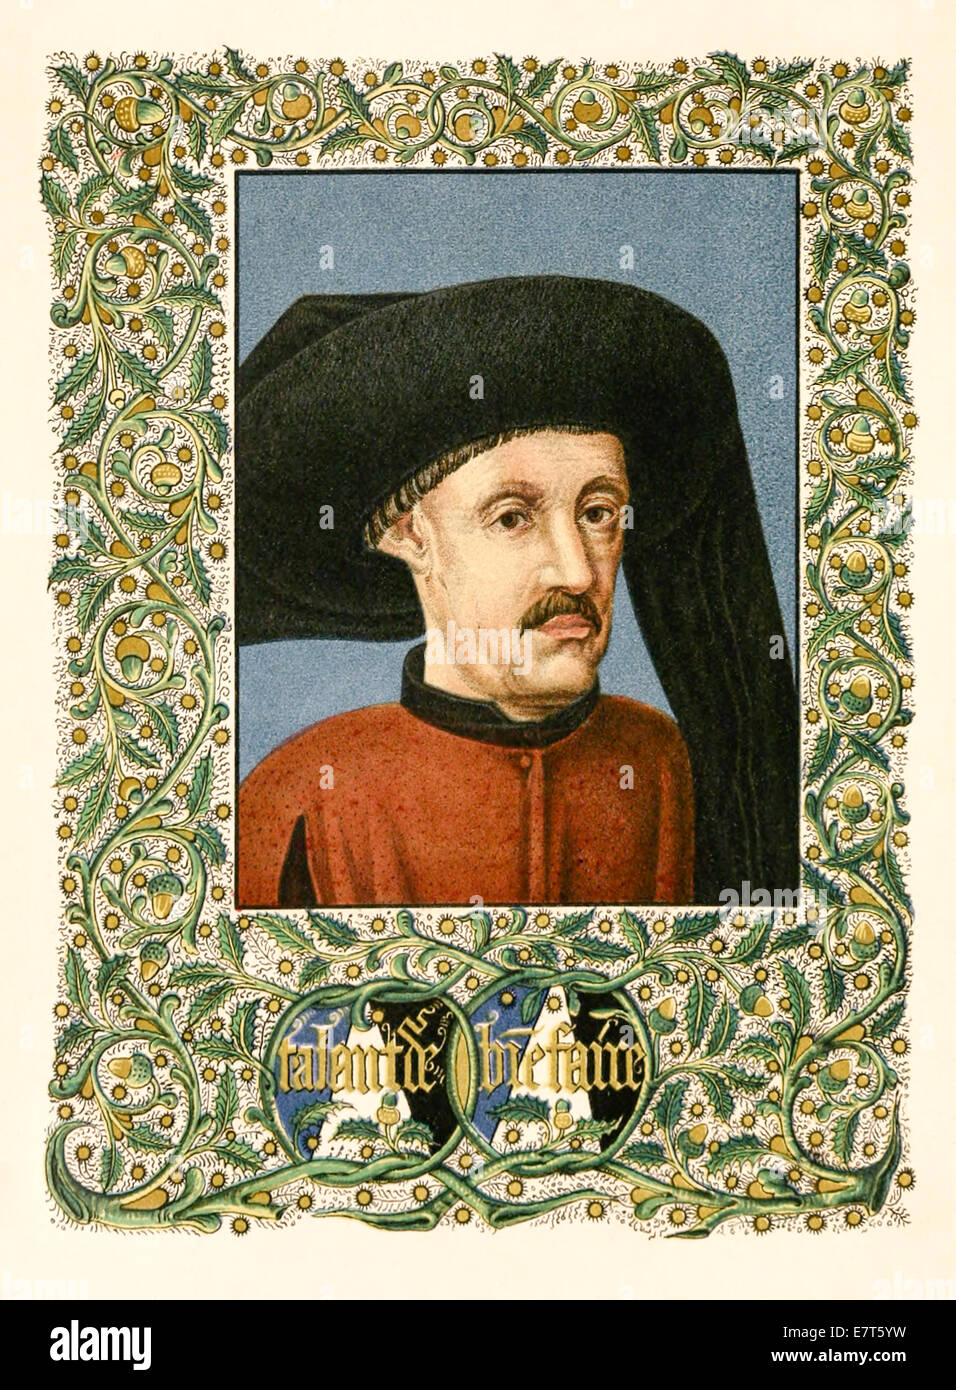 Heinrich von Portugal (1394-1460), alias "Heinrich der Seefahrer" verantwortlich für die portugiesischen maritime Exploration. Siehe Beschreibung für mehr Informationen. Stockfoto